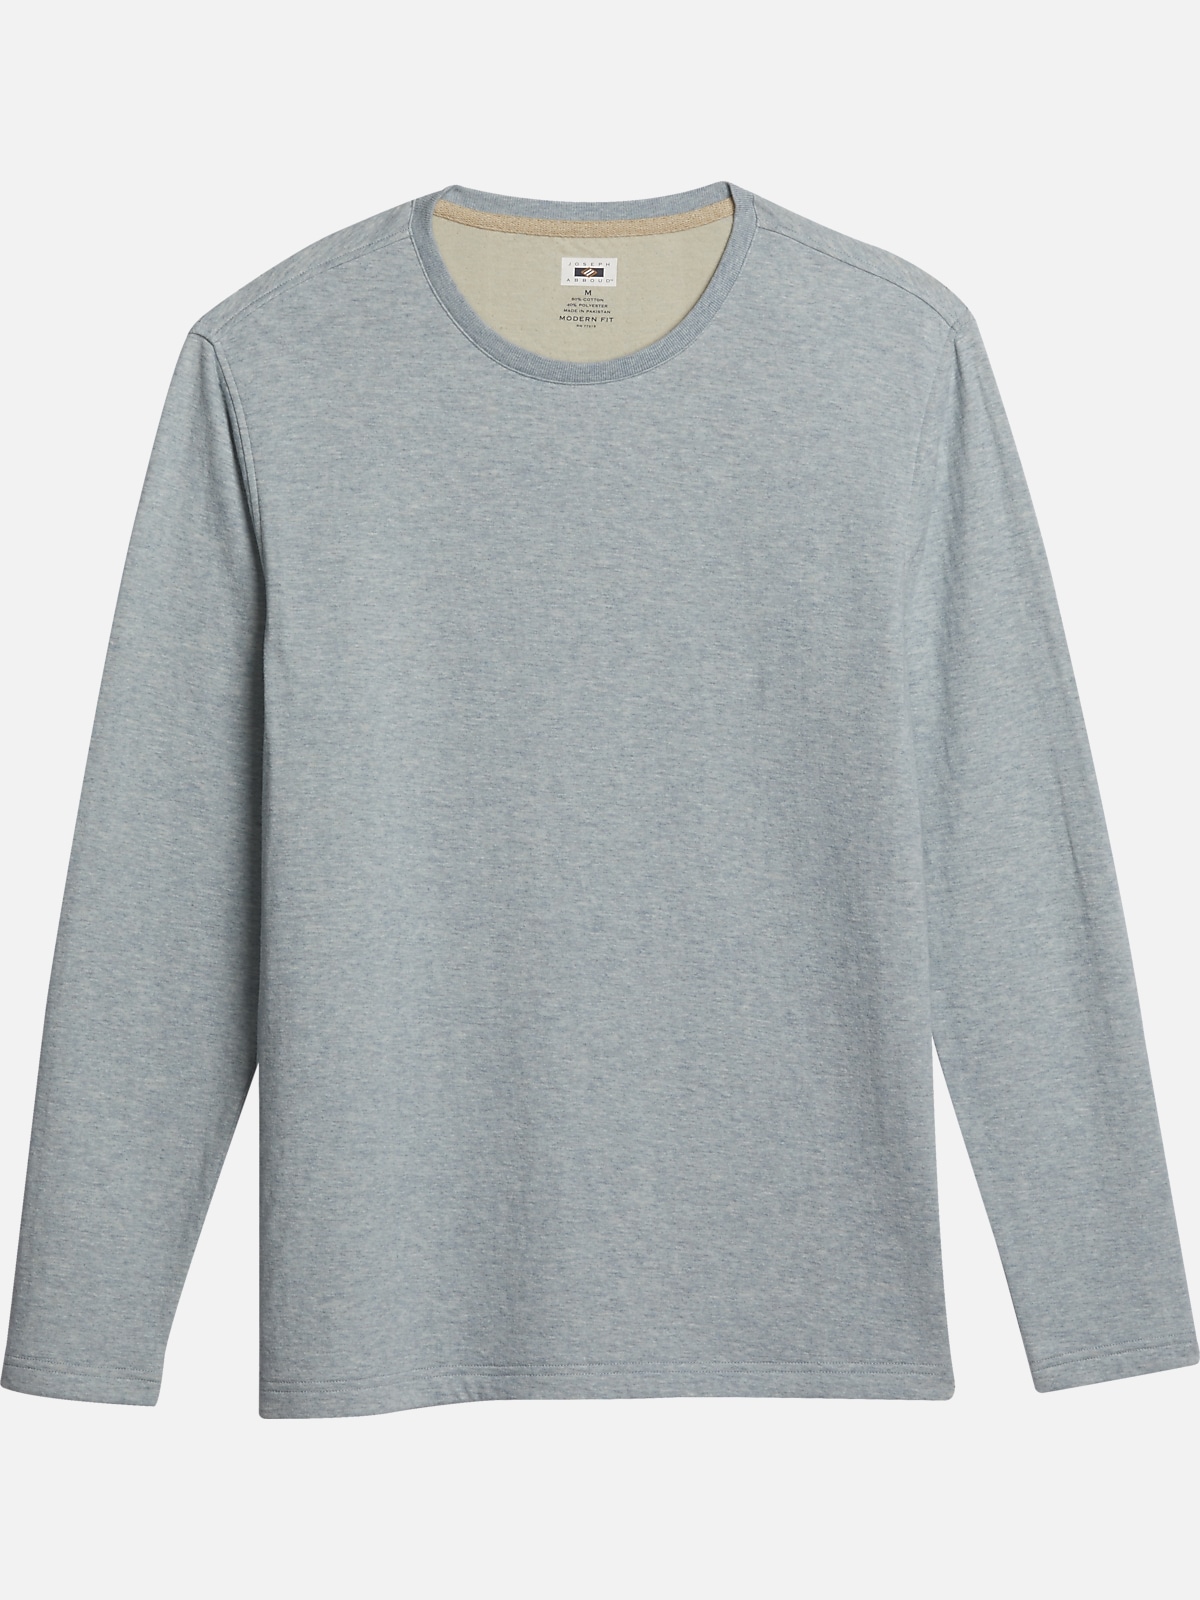 Joseph Abboud Modern Fit Long Sleeve T-Shirt | All Sale| Men's Wearhouse